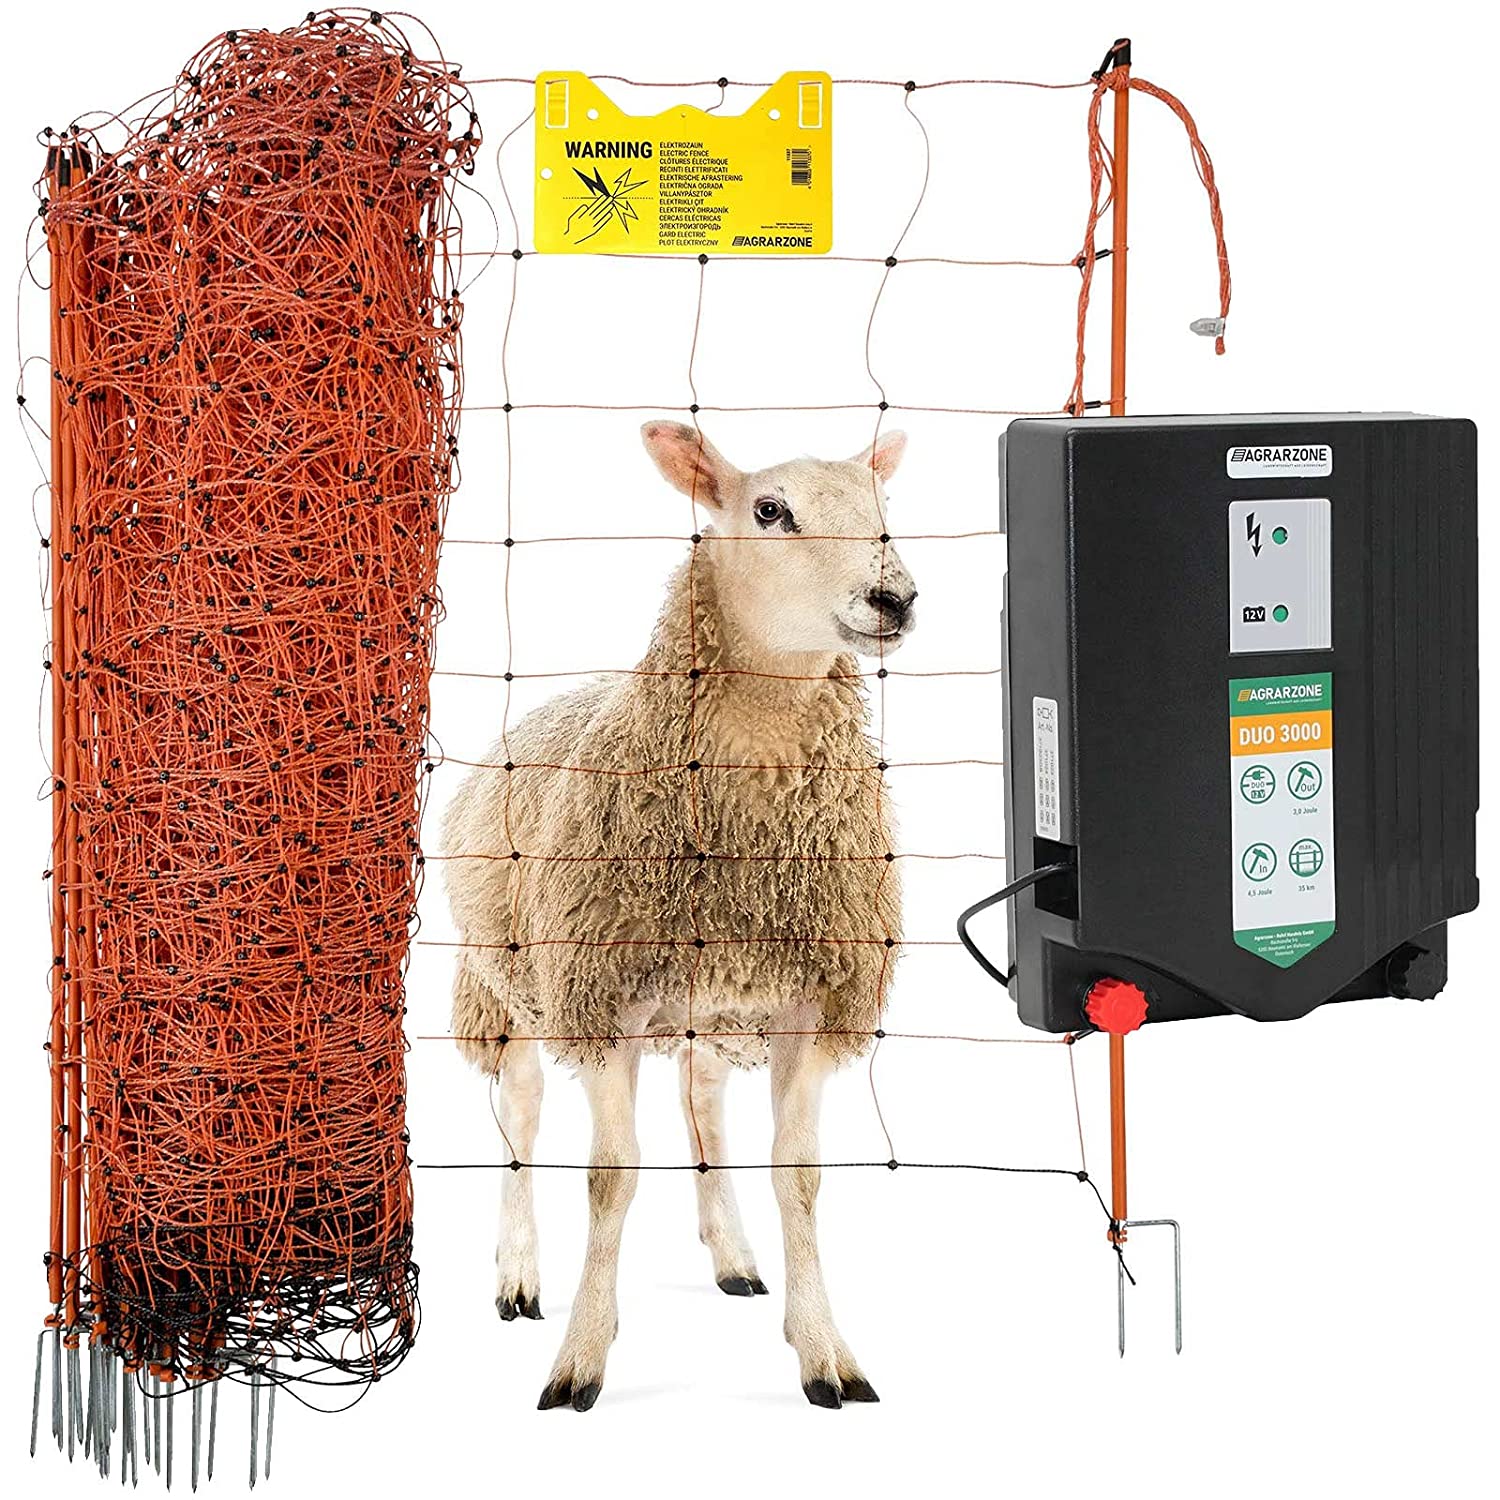 Agrarzone kit recinto elettrico per pecore Duo 3000 12V/230V, 4,5 J, rete 50 m x 90 cm